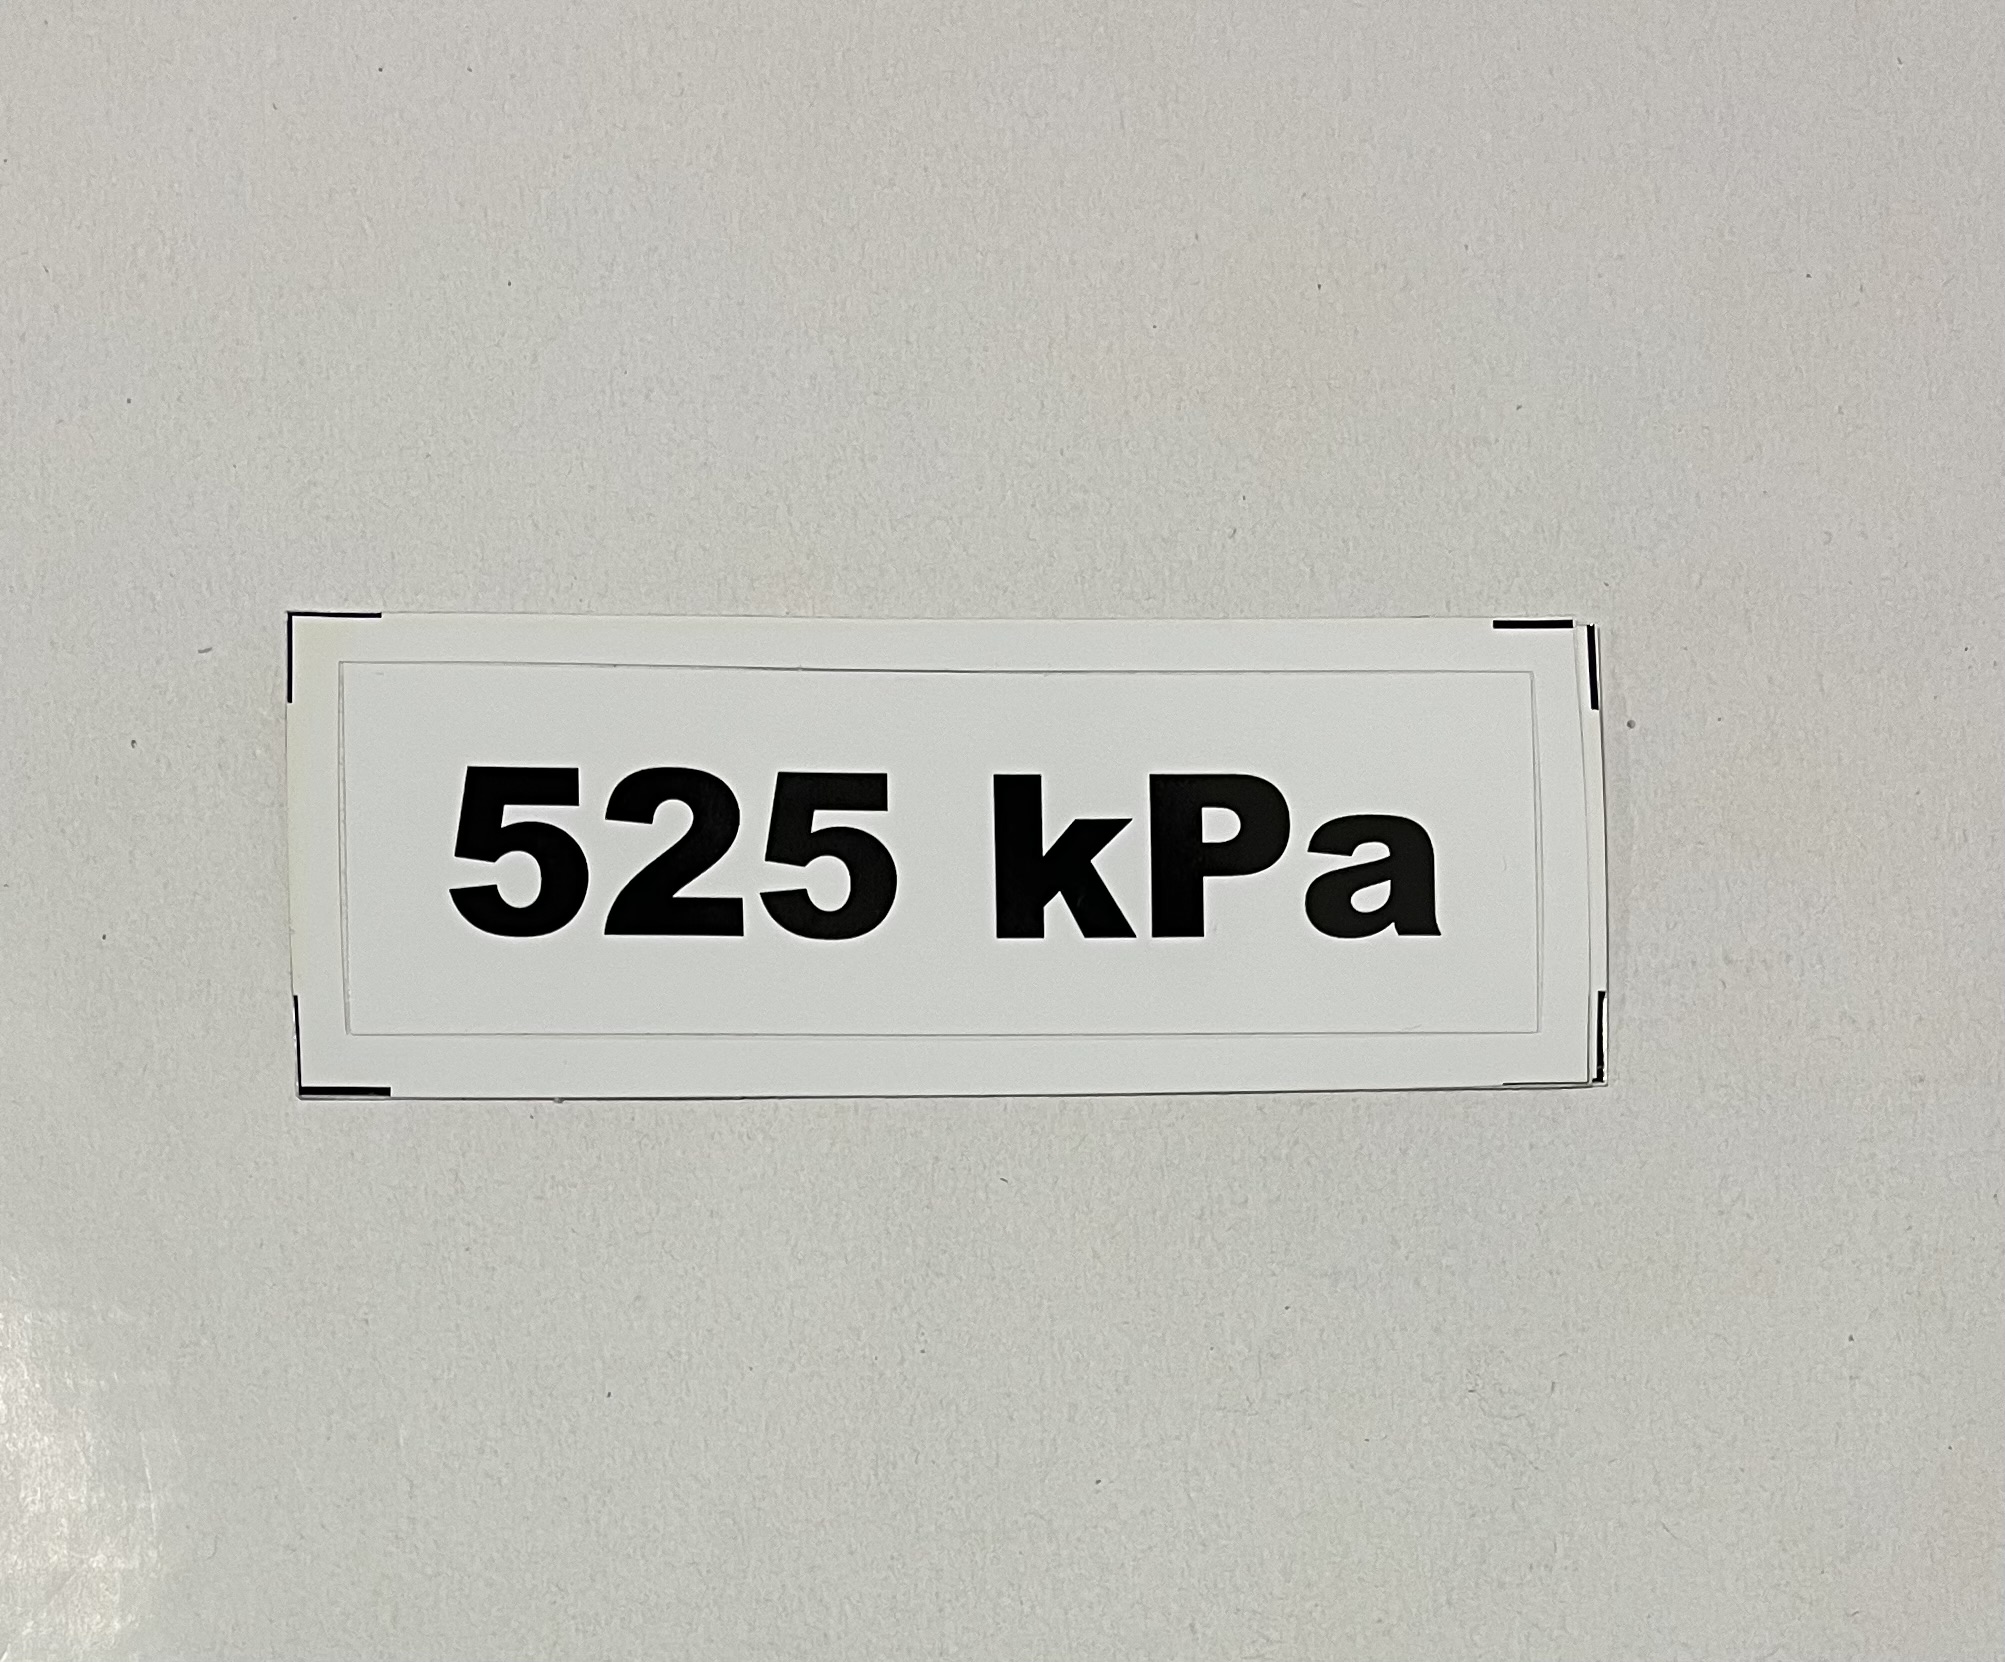 Označenie kPa 525